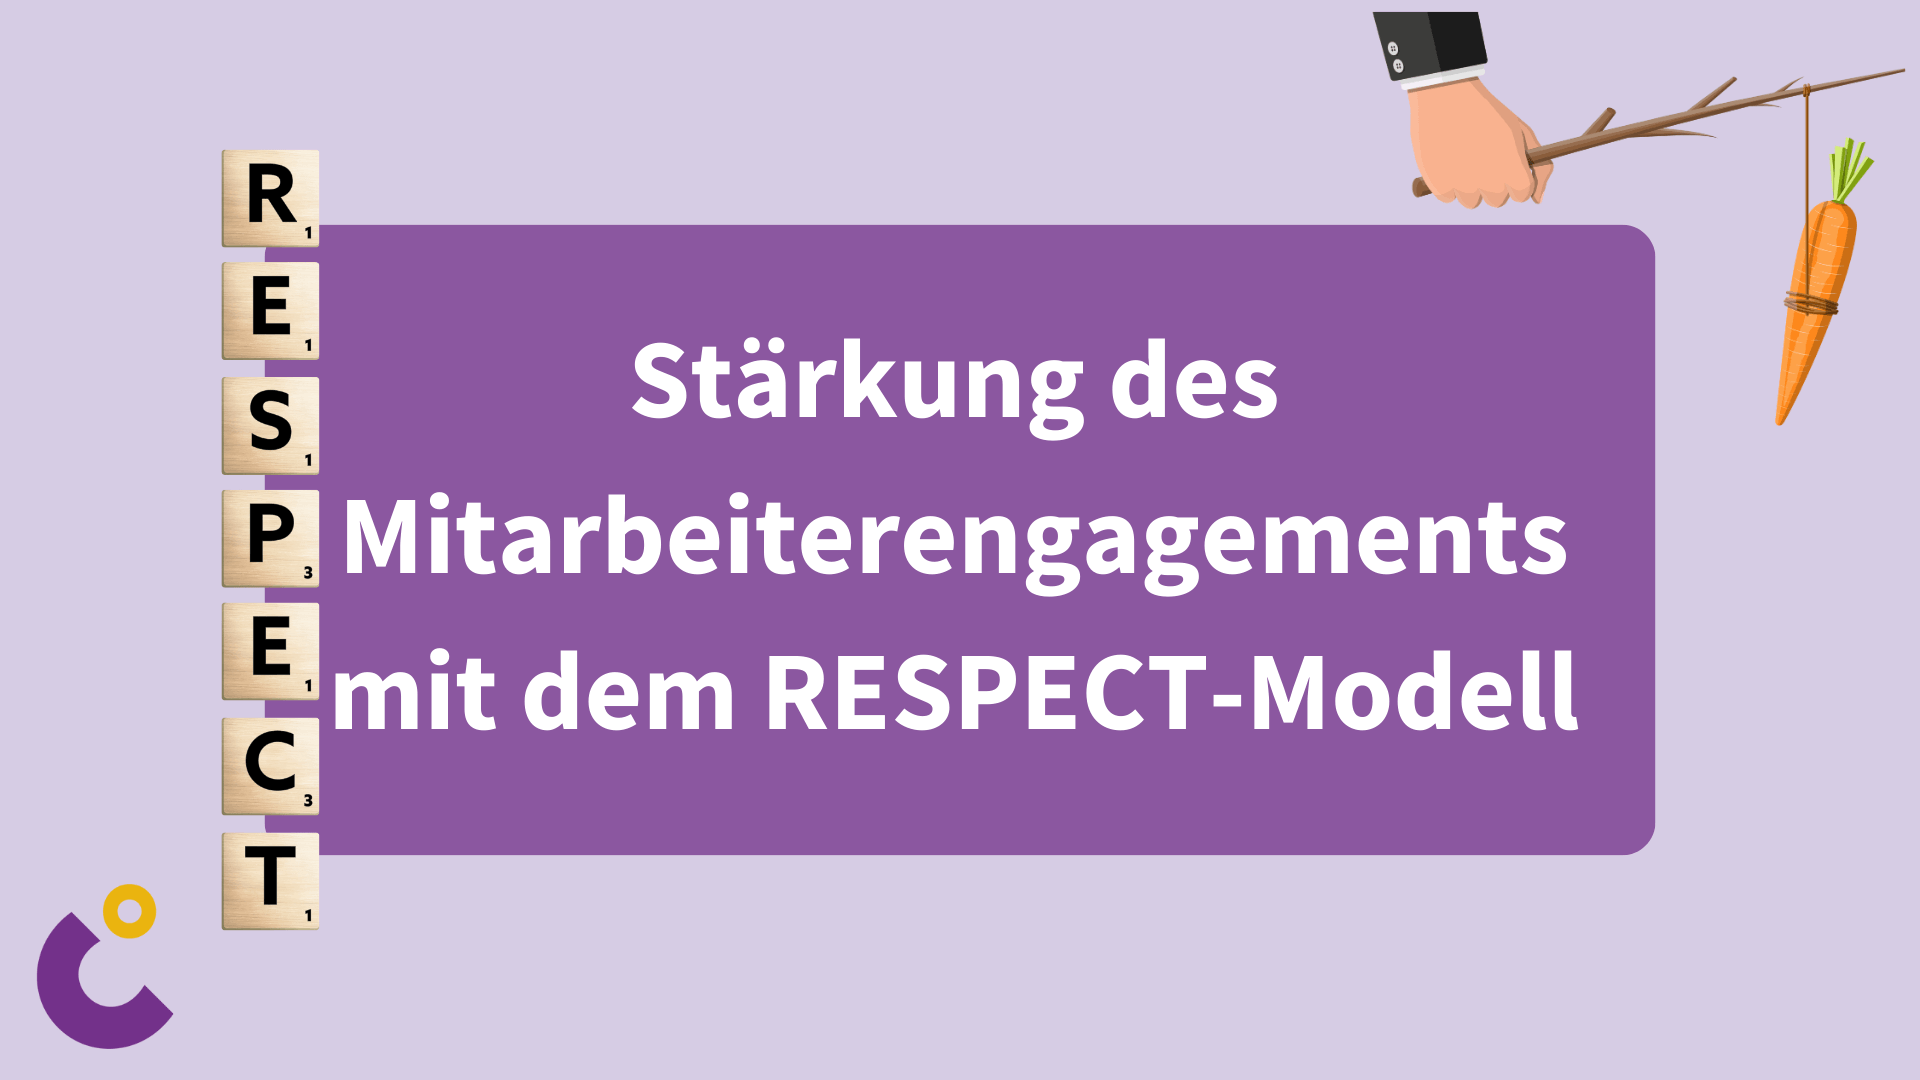 Stärkung des Mitarbeiterengagements mit dem RESPECT-Modell